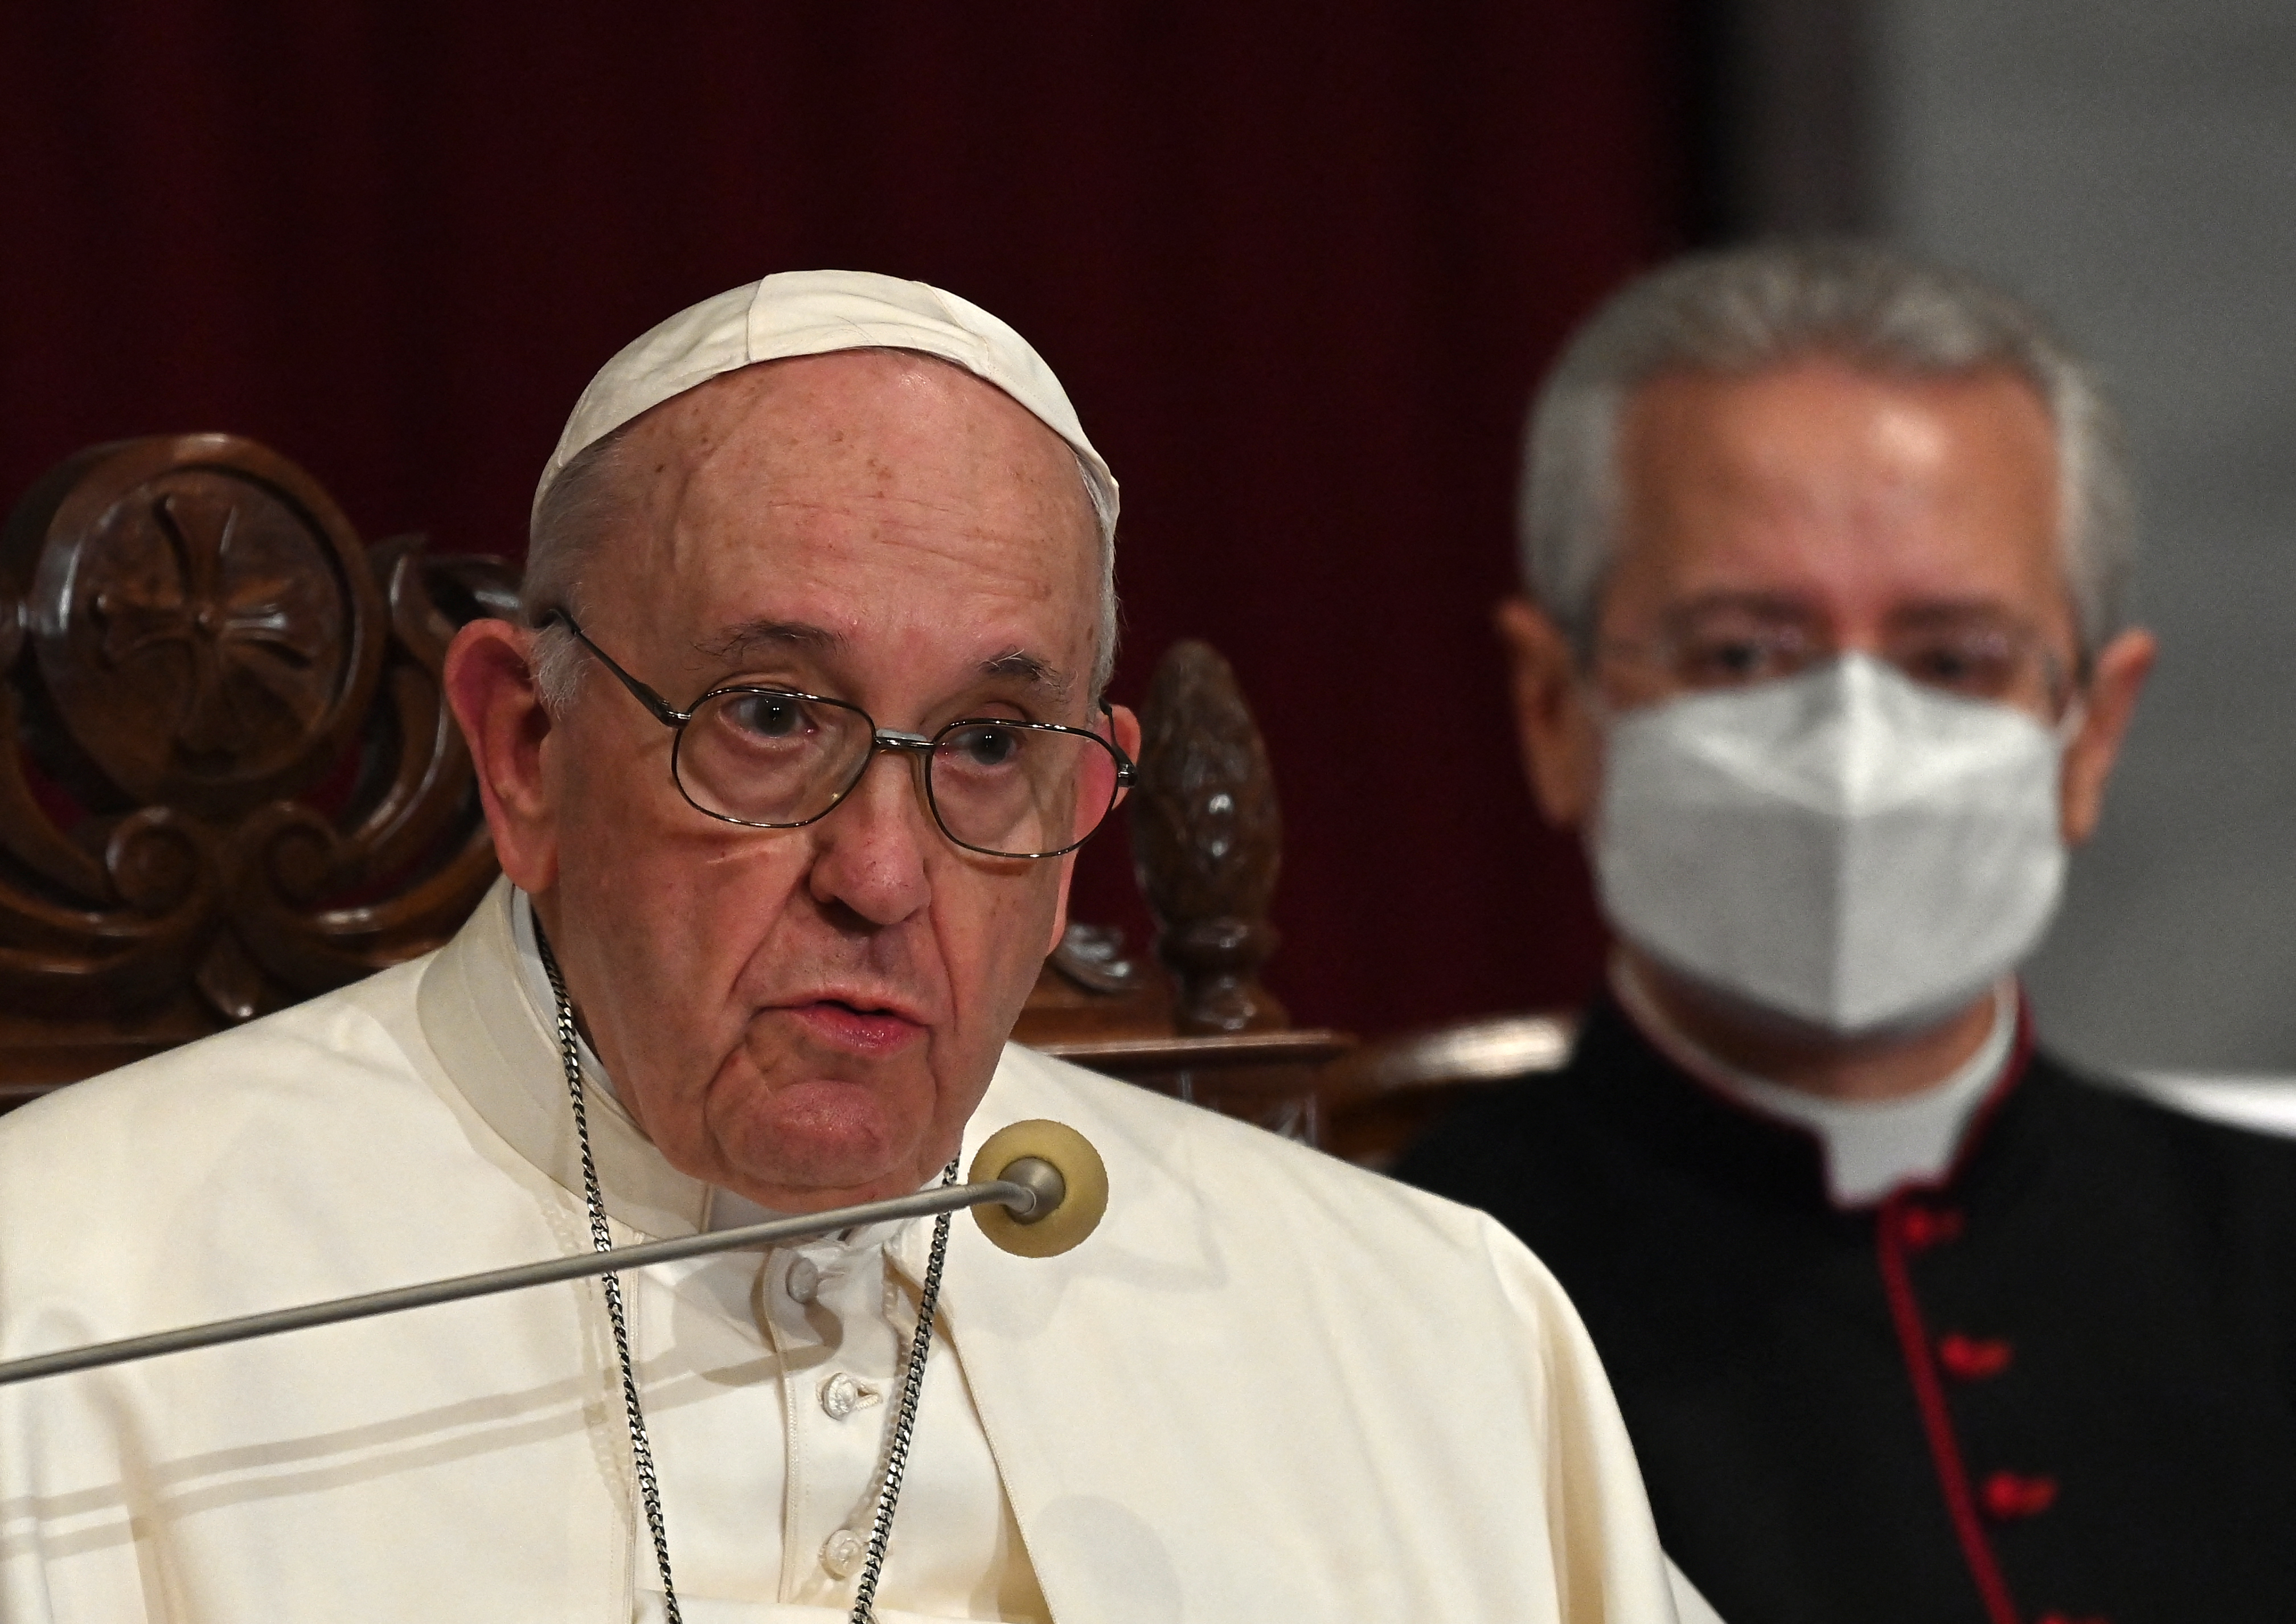 El papa Francisco criticó “la práctica inhumana” de los vientres de alquiler